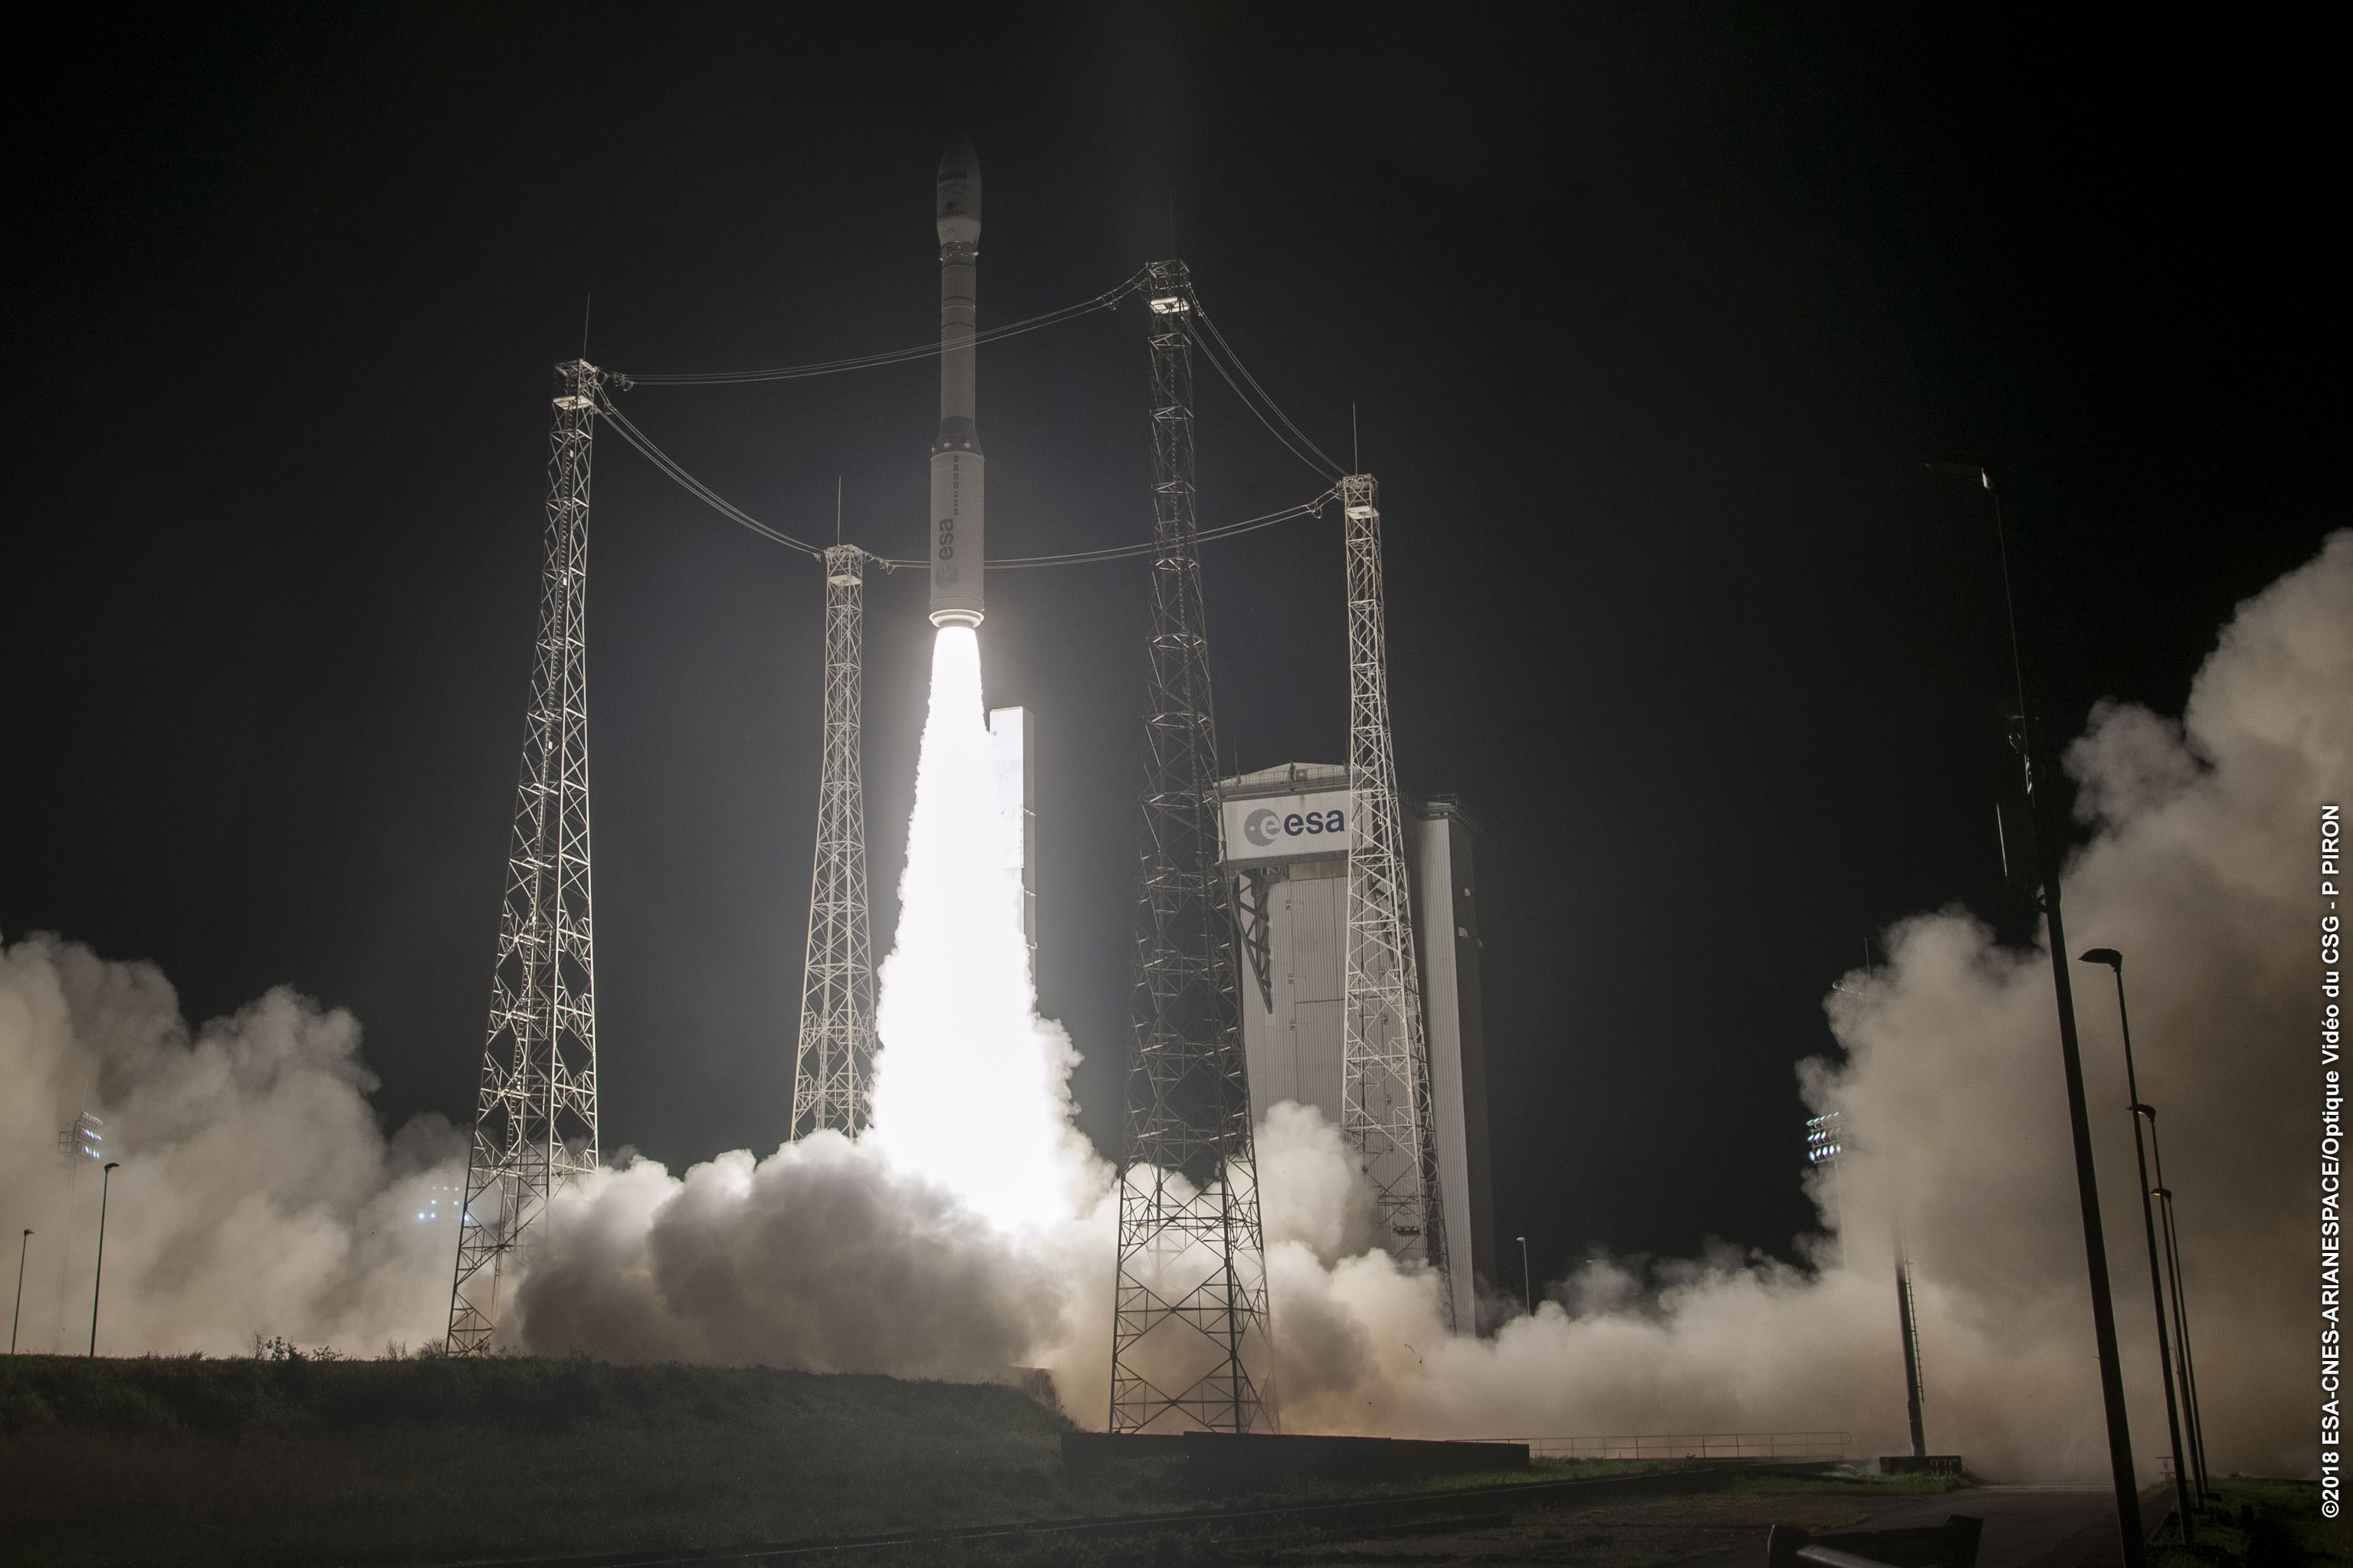 Le nouvel échec du lanceur européen Vega aura-t-il des conséquences très sérieuses ?